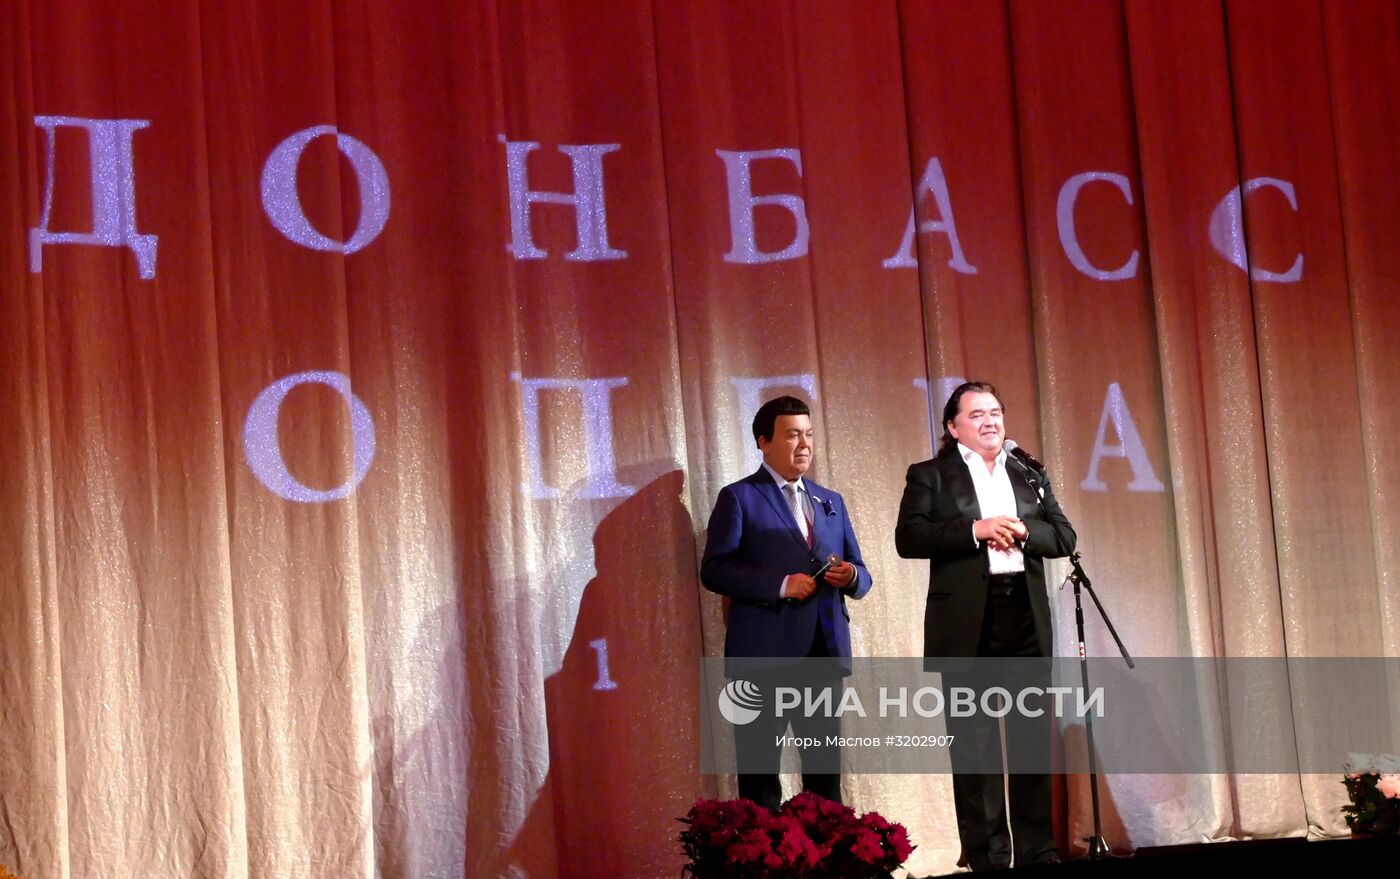 Международный фестиваль "Звезды мирового балета" в Донецке